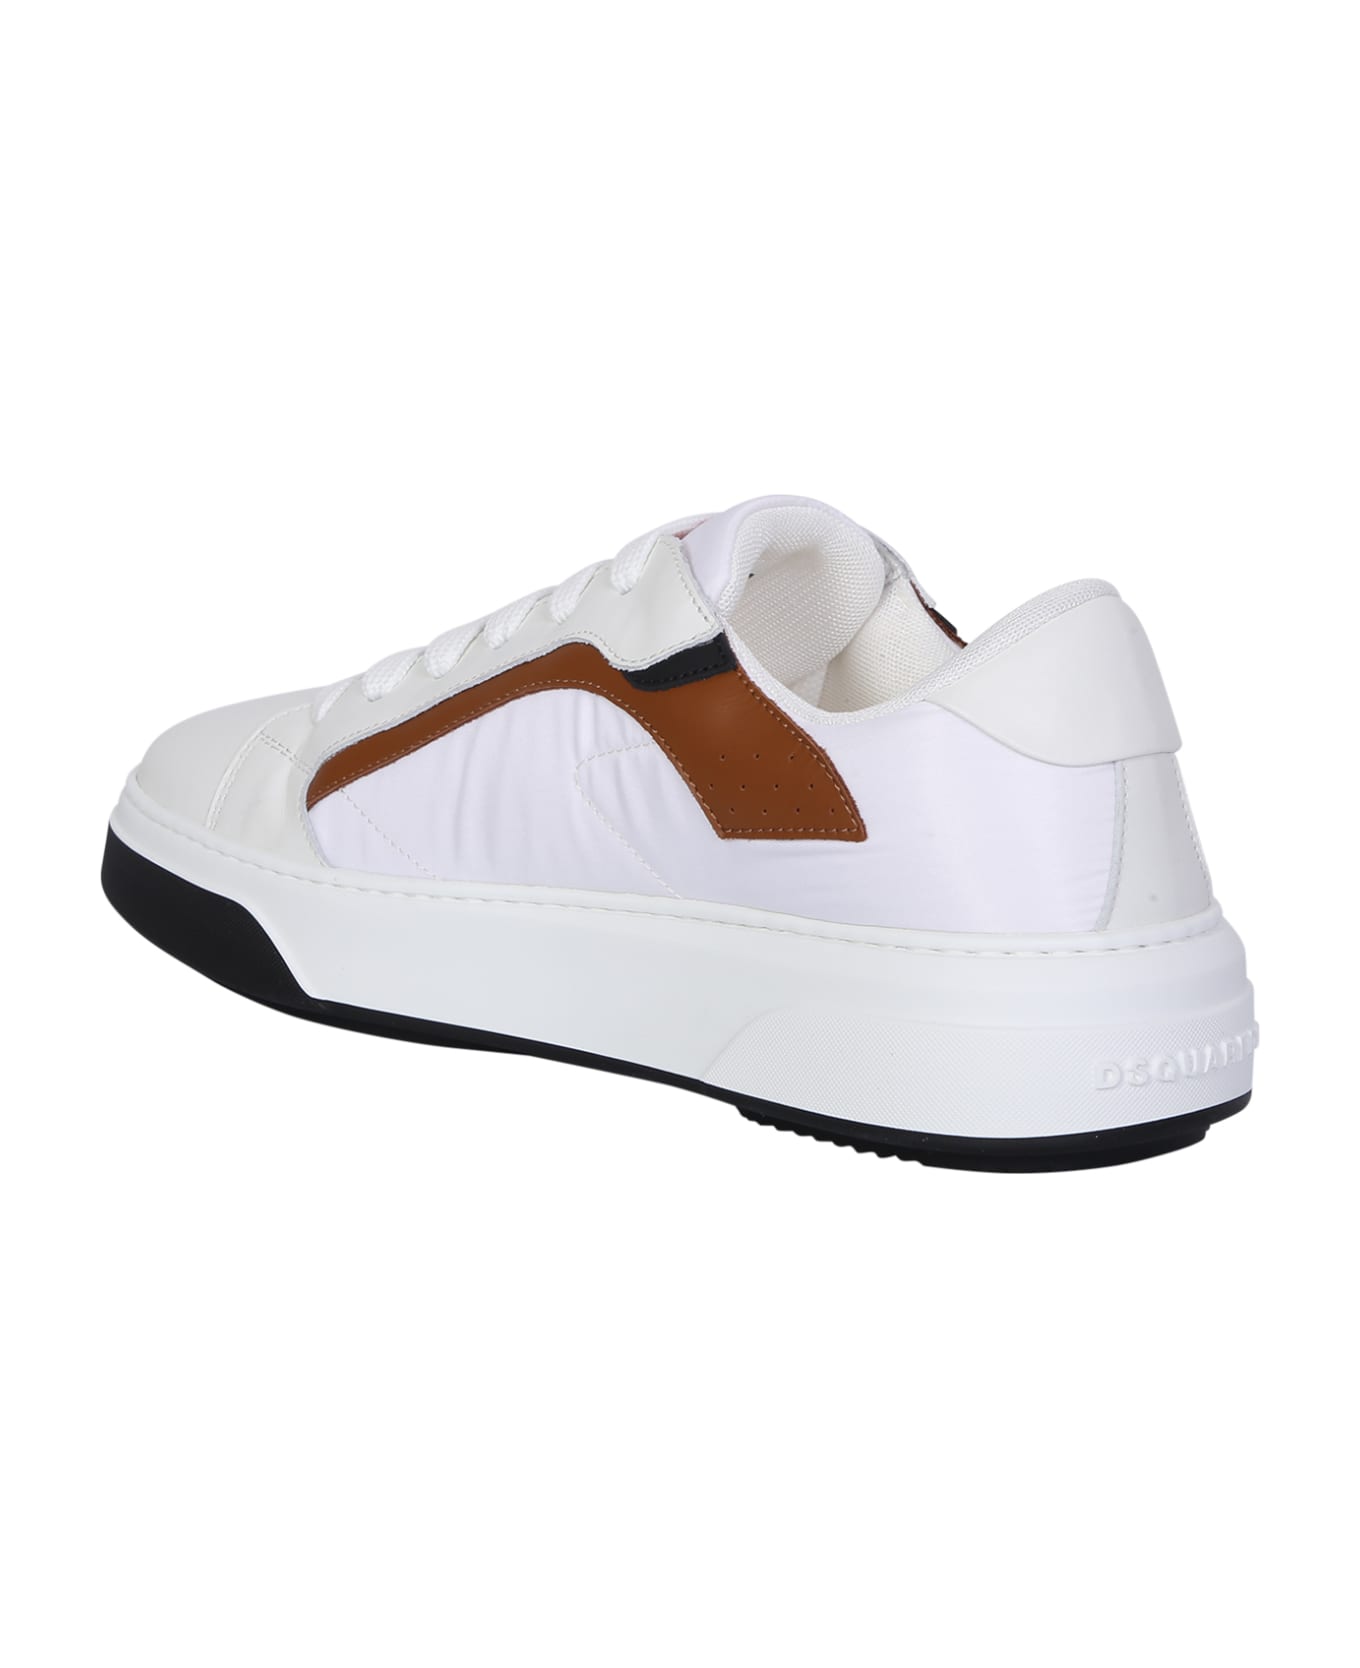 Dsquared2 Nylon White Sneakers - White